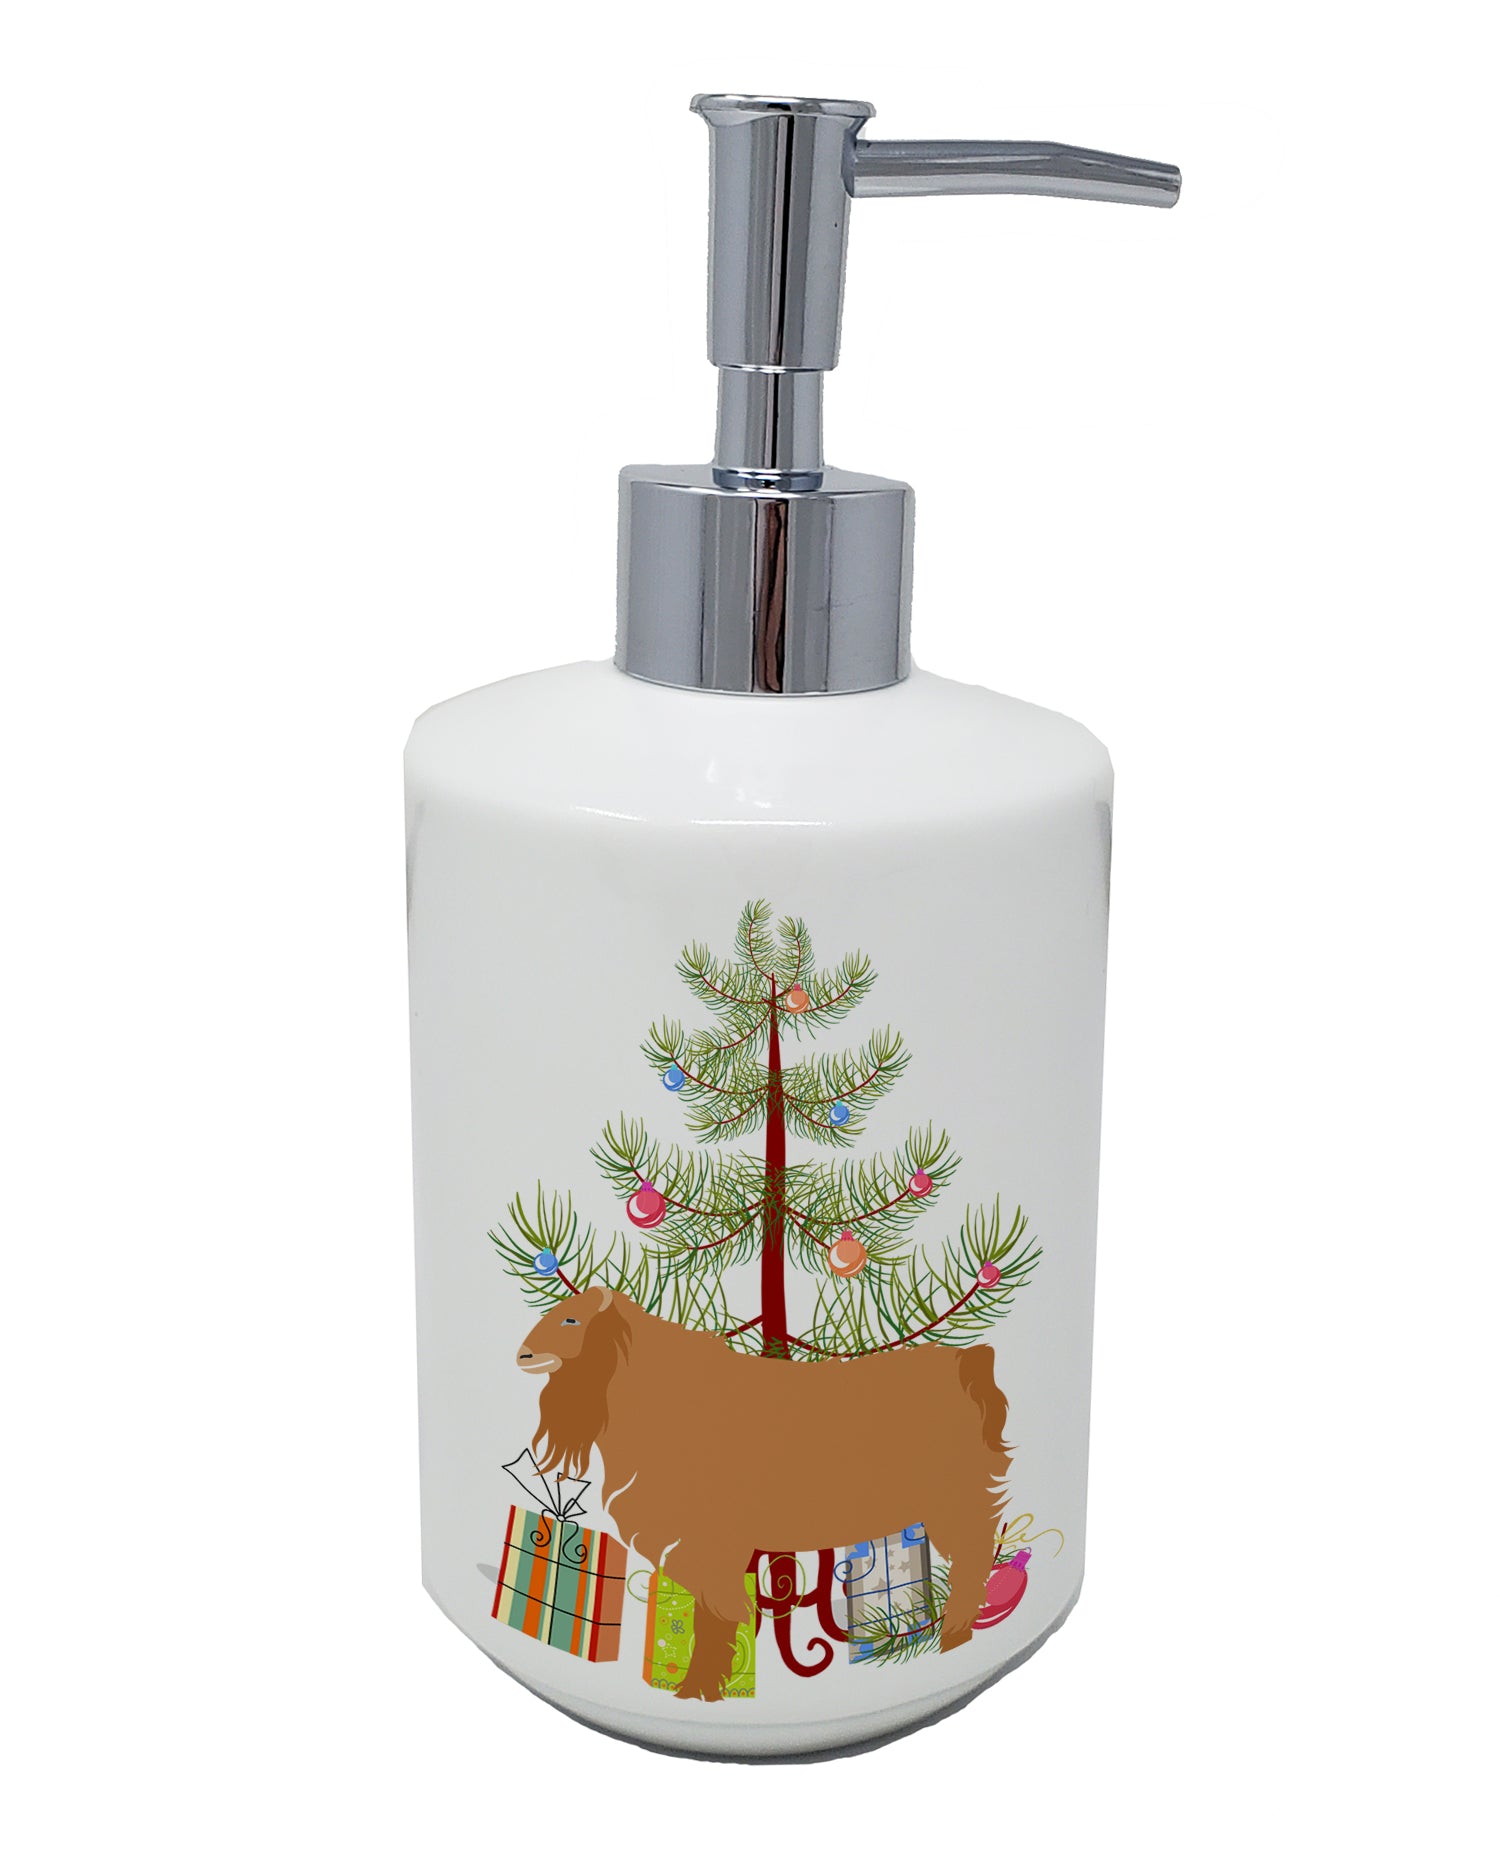 Buy this American Lamancha Goat Christmas Ceramic Soap Dispenser